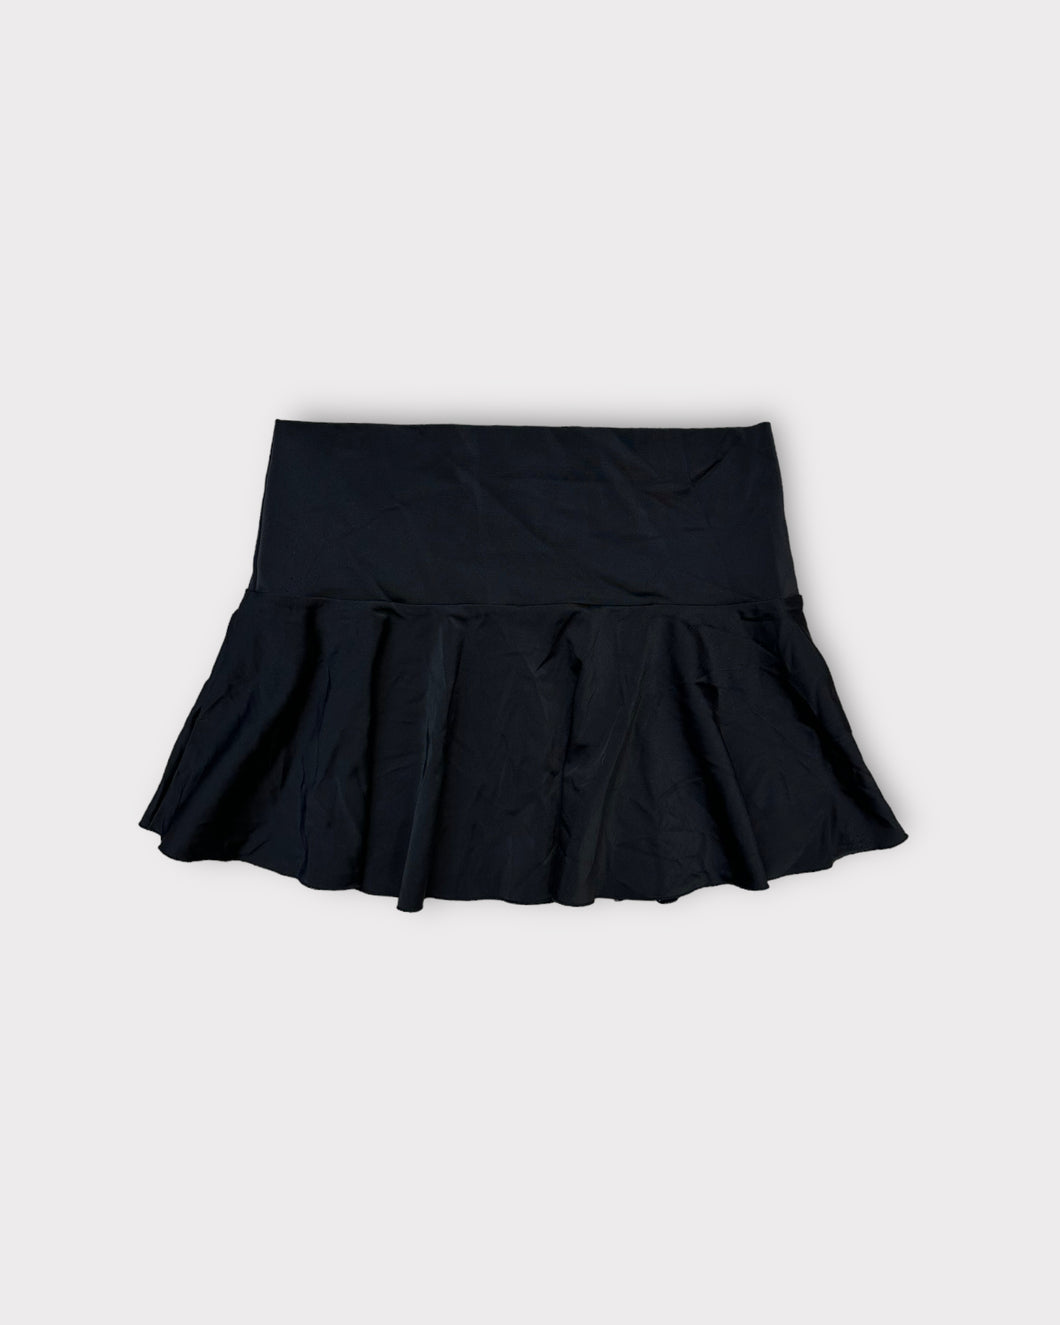 Victoria's Secret Black Mini Skirt (XS)